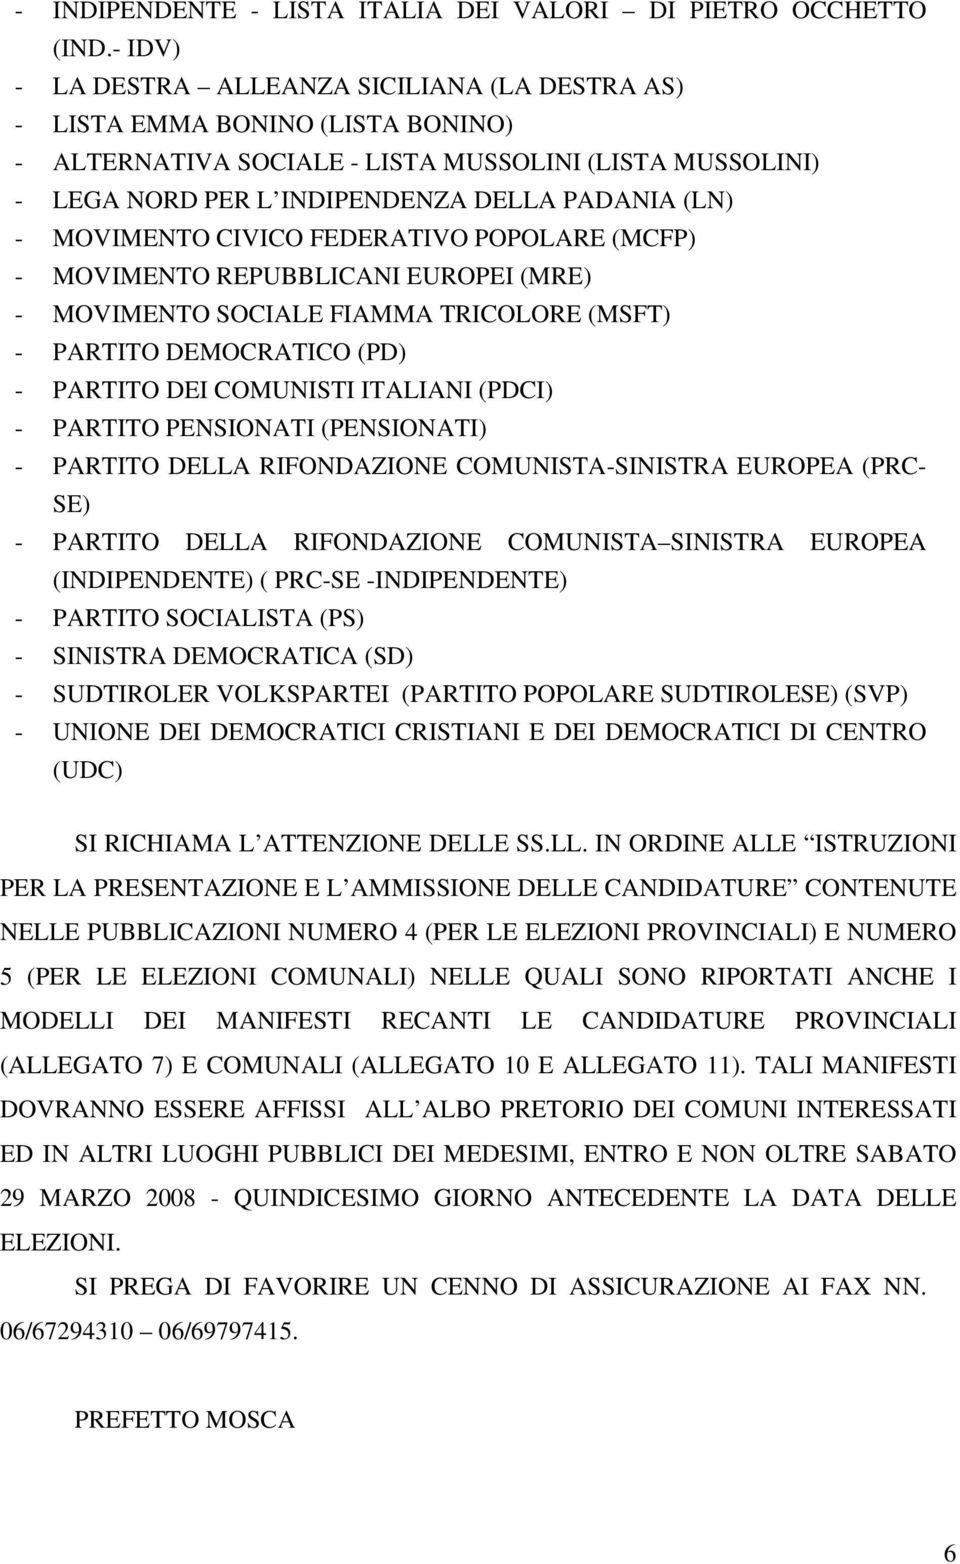 MOVIMENTO CIVICO FEDERATIVO POPOLARE (MCFP) - MOVIMENTO REPUBBLICANI EUROPEI (MRE) - MOVIMENTO SOCIALE FIAMMA TRICOLORE (MSFT) - PARTITO DEMOCRATICO (PD) - PARTITO DEI COMUNISTI ITALIANI (PDCI) -